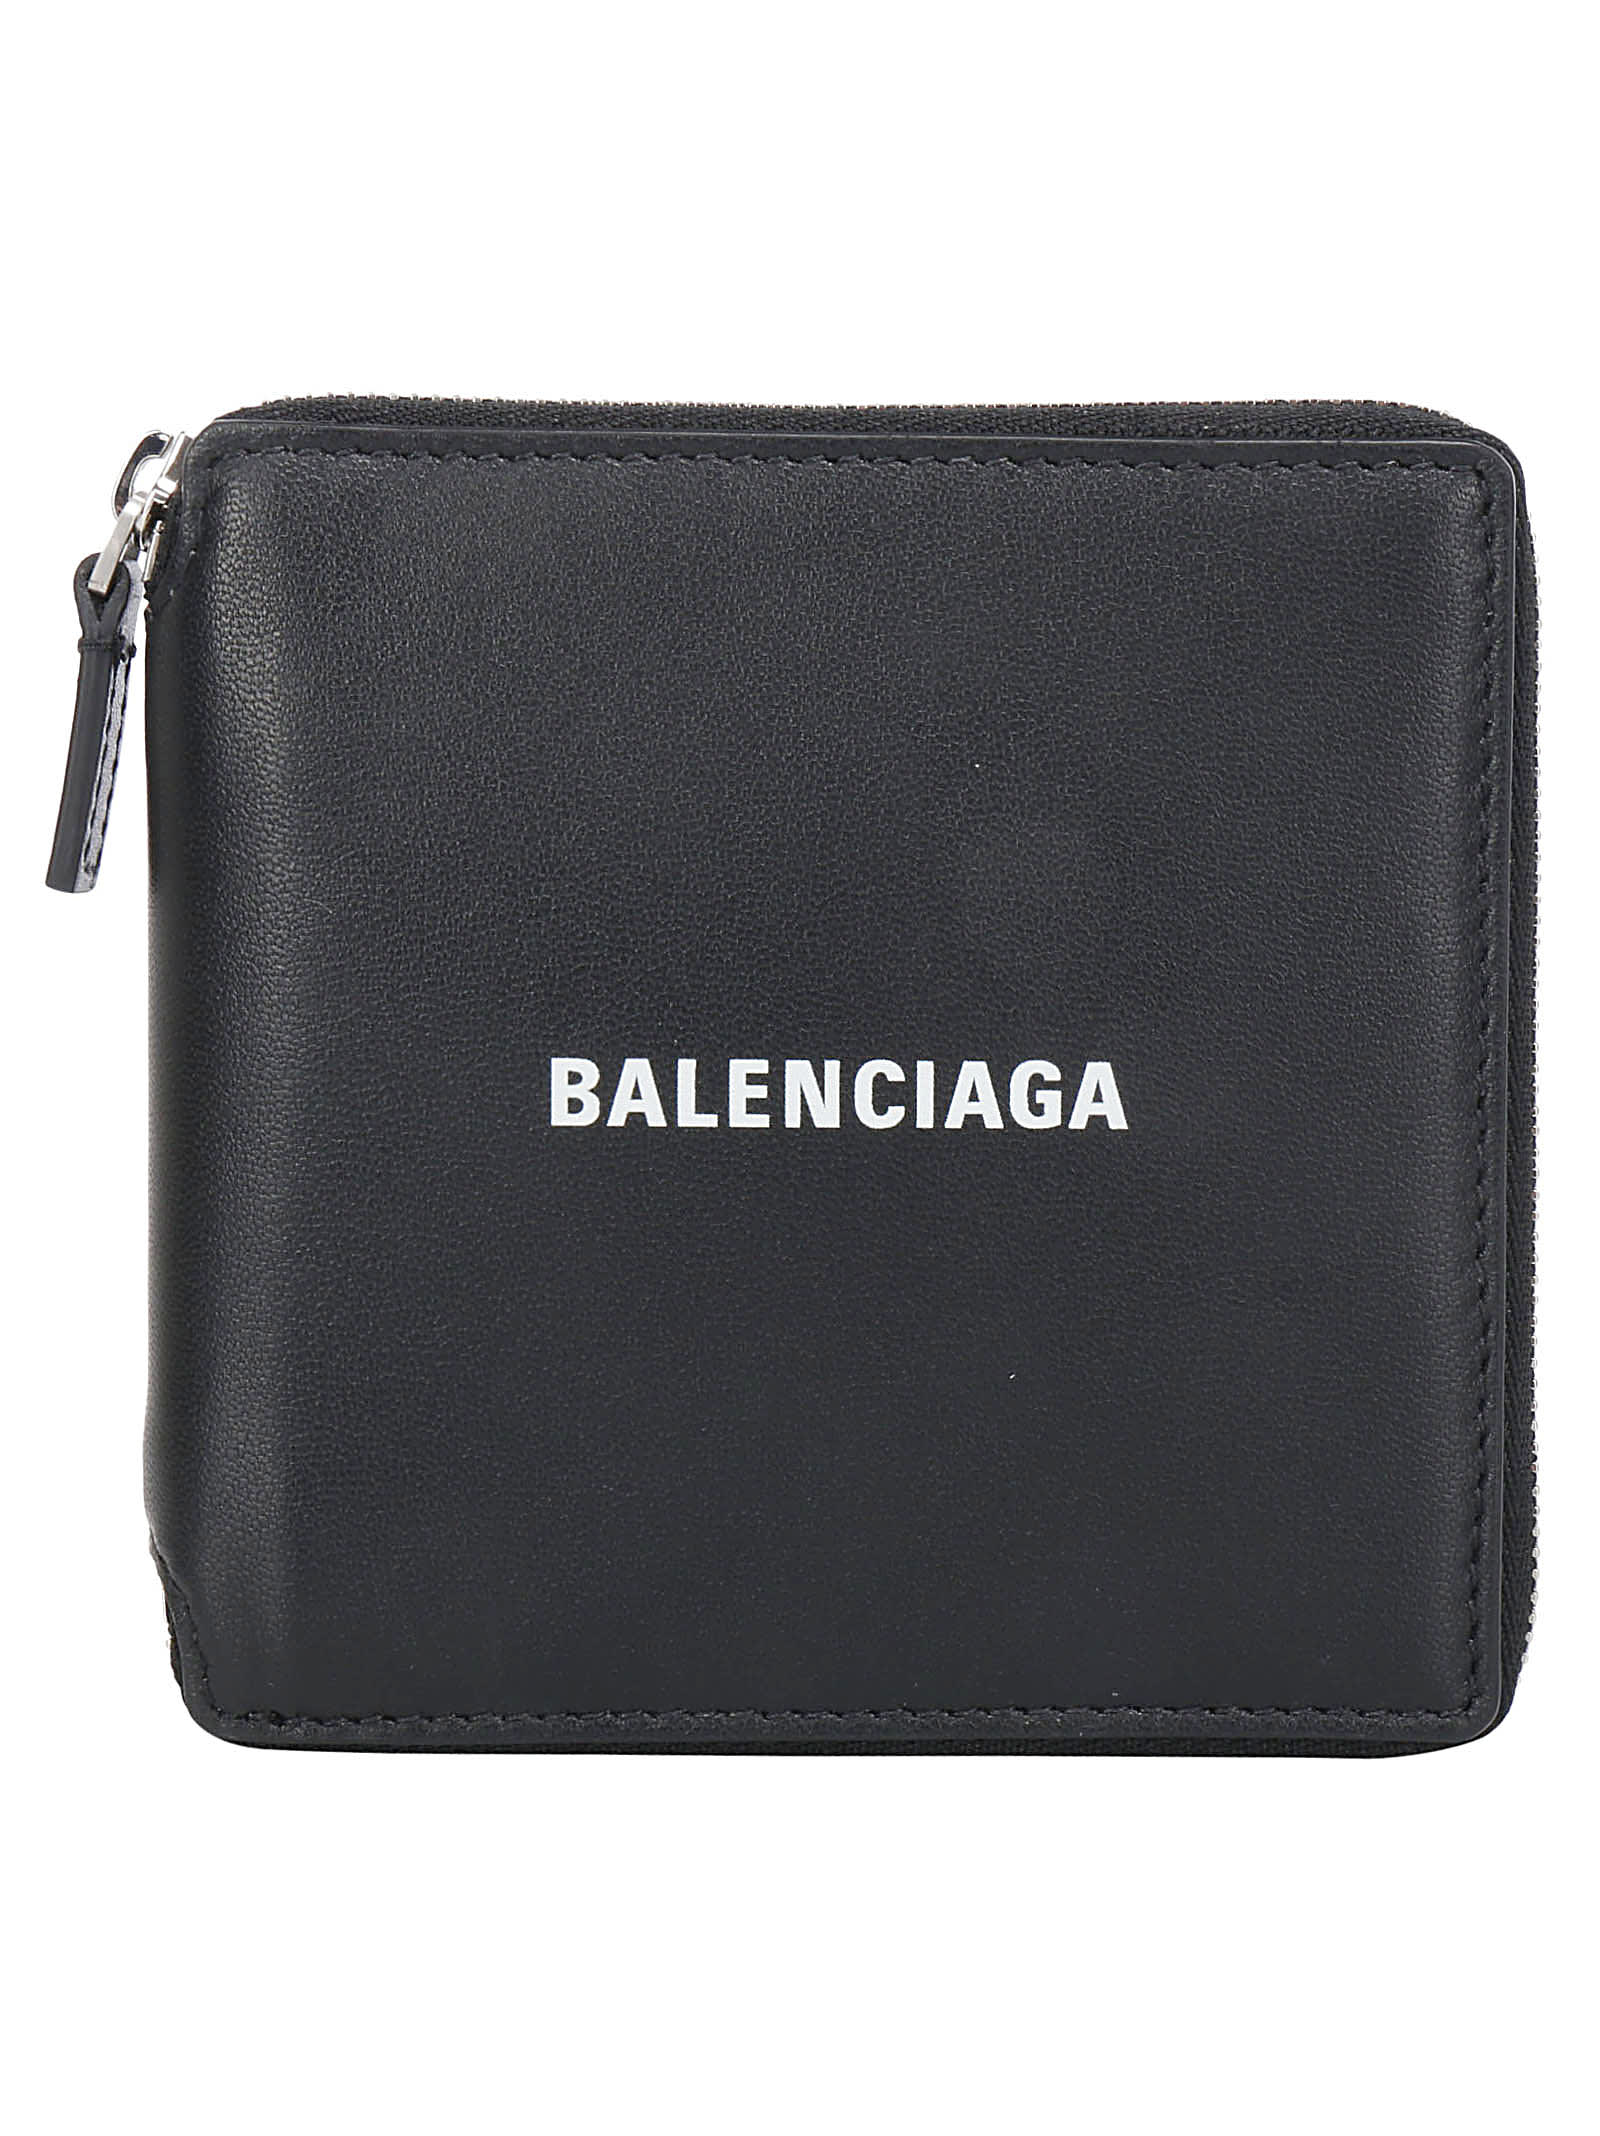 Balenciaga Wallets | italist, ALWAYS 